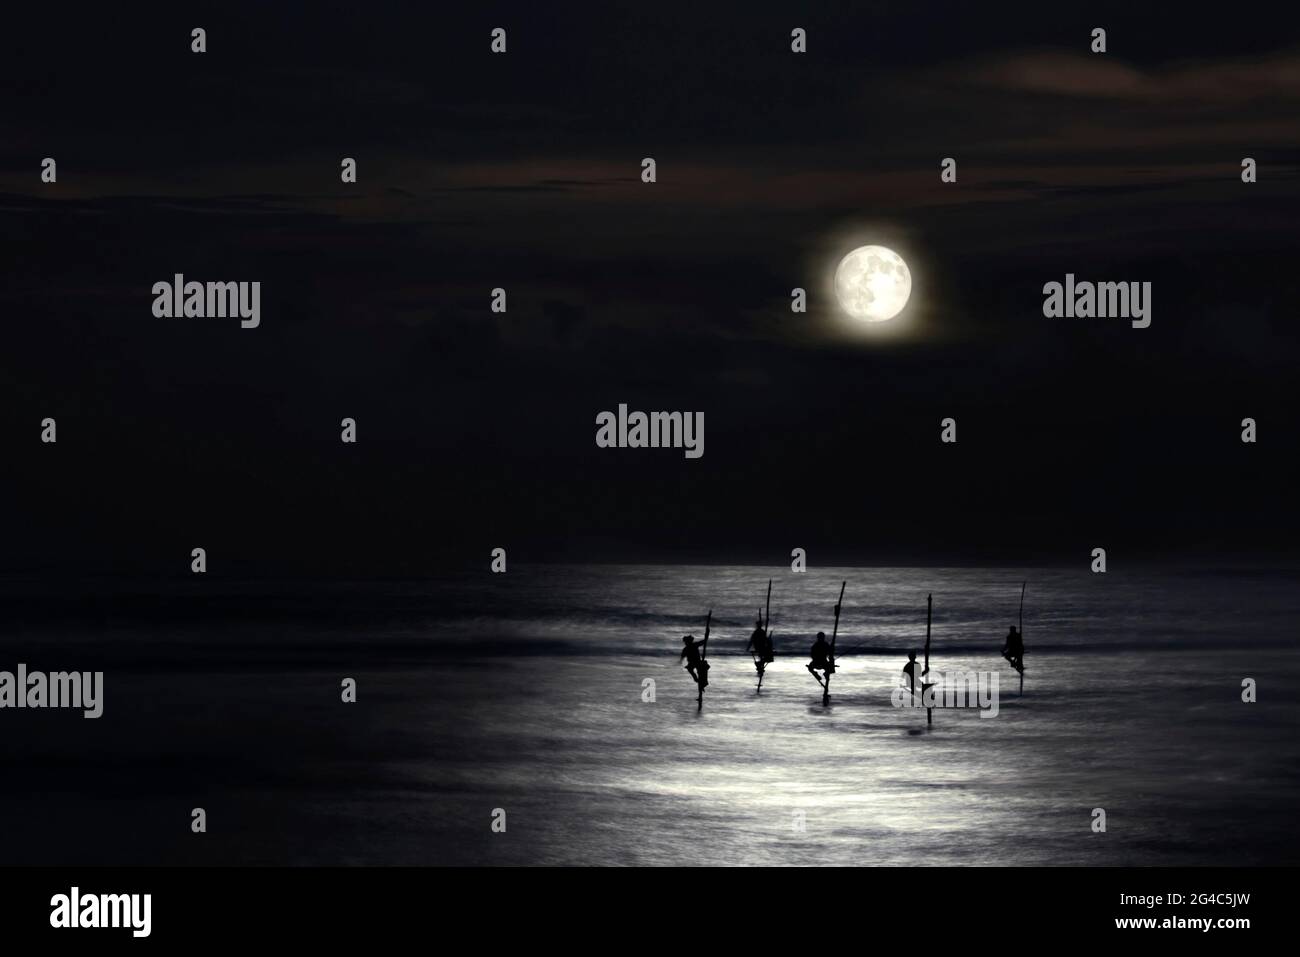 Pêcheurs sur pilotis en silhouette au clair de lune à Galle, Sri Lanka Banque D'Images